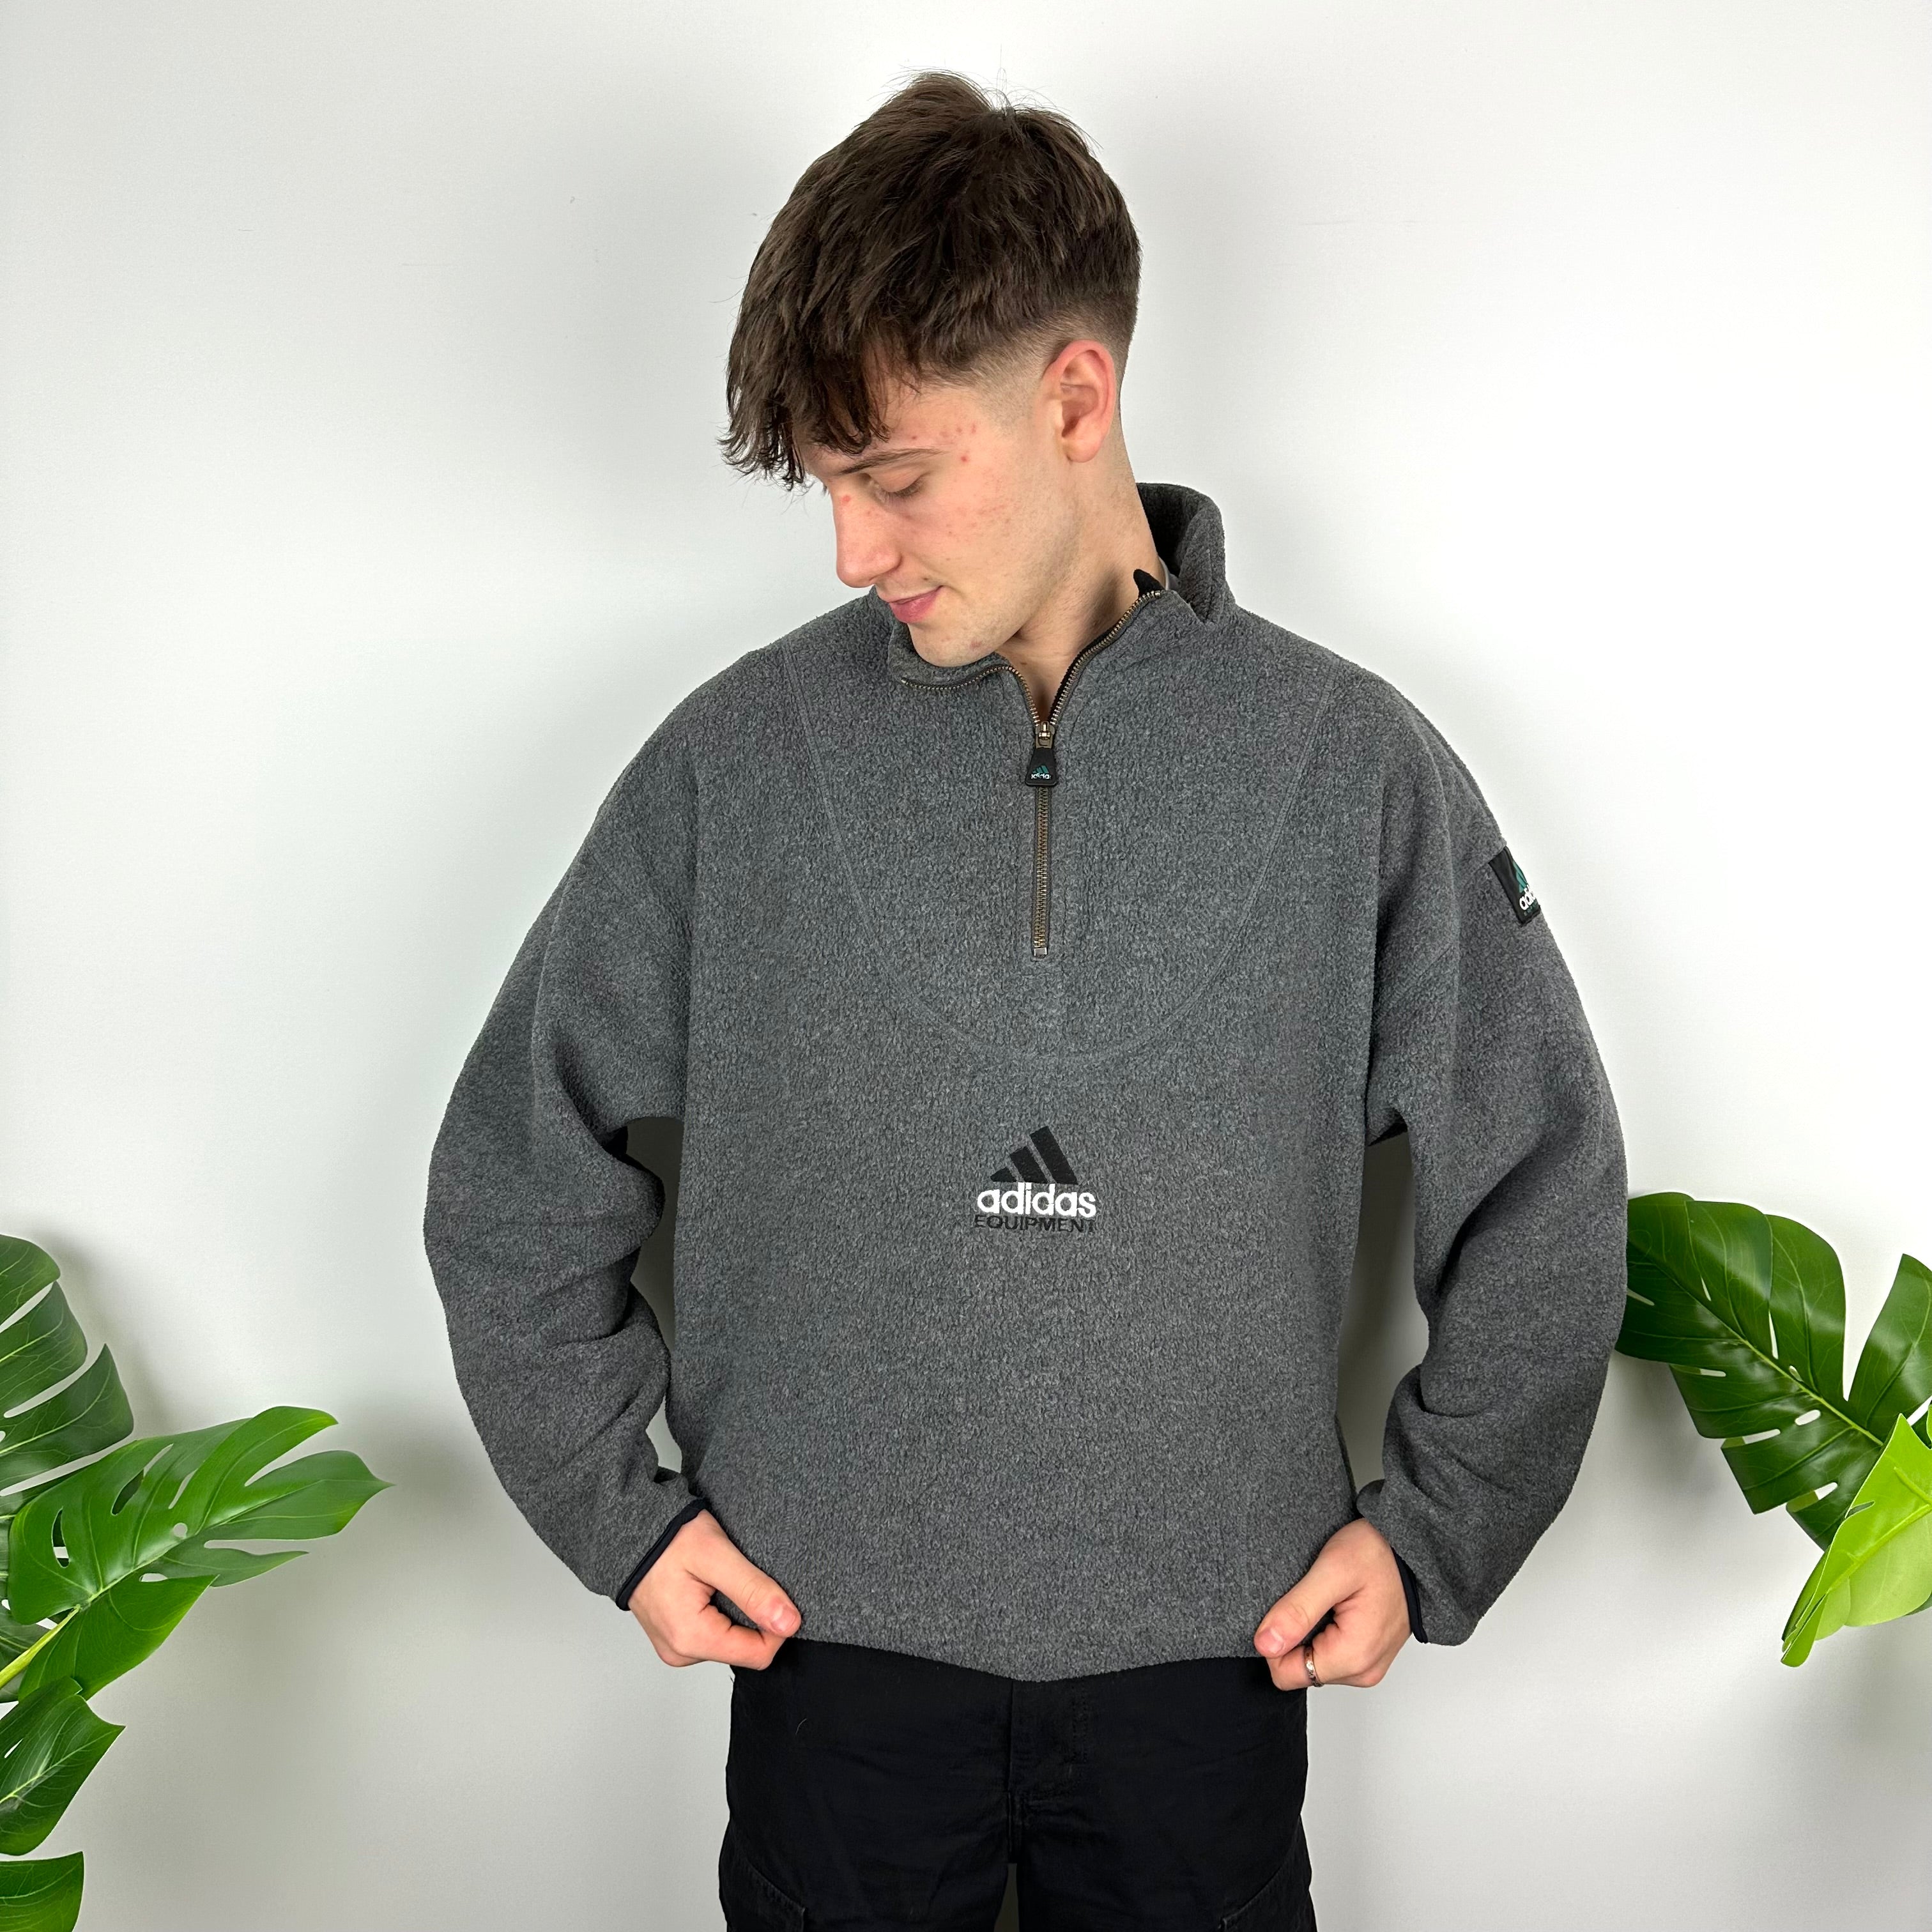 Adidas Equipment RARE Grey Embroidered Spell Out Teddy Bear Fleece Quarter Zip Sweatshirt (XL)